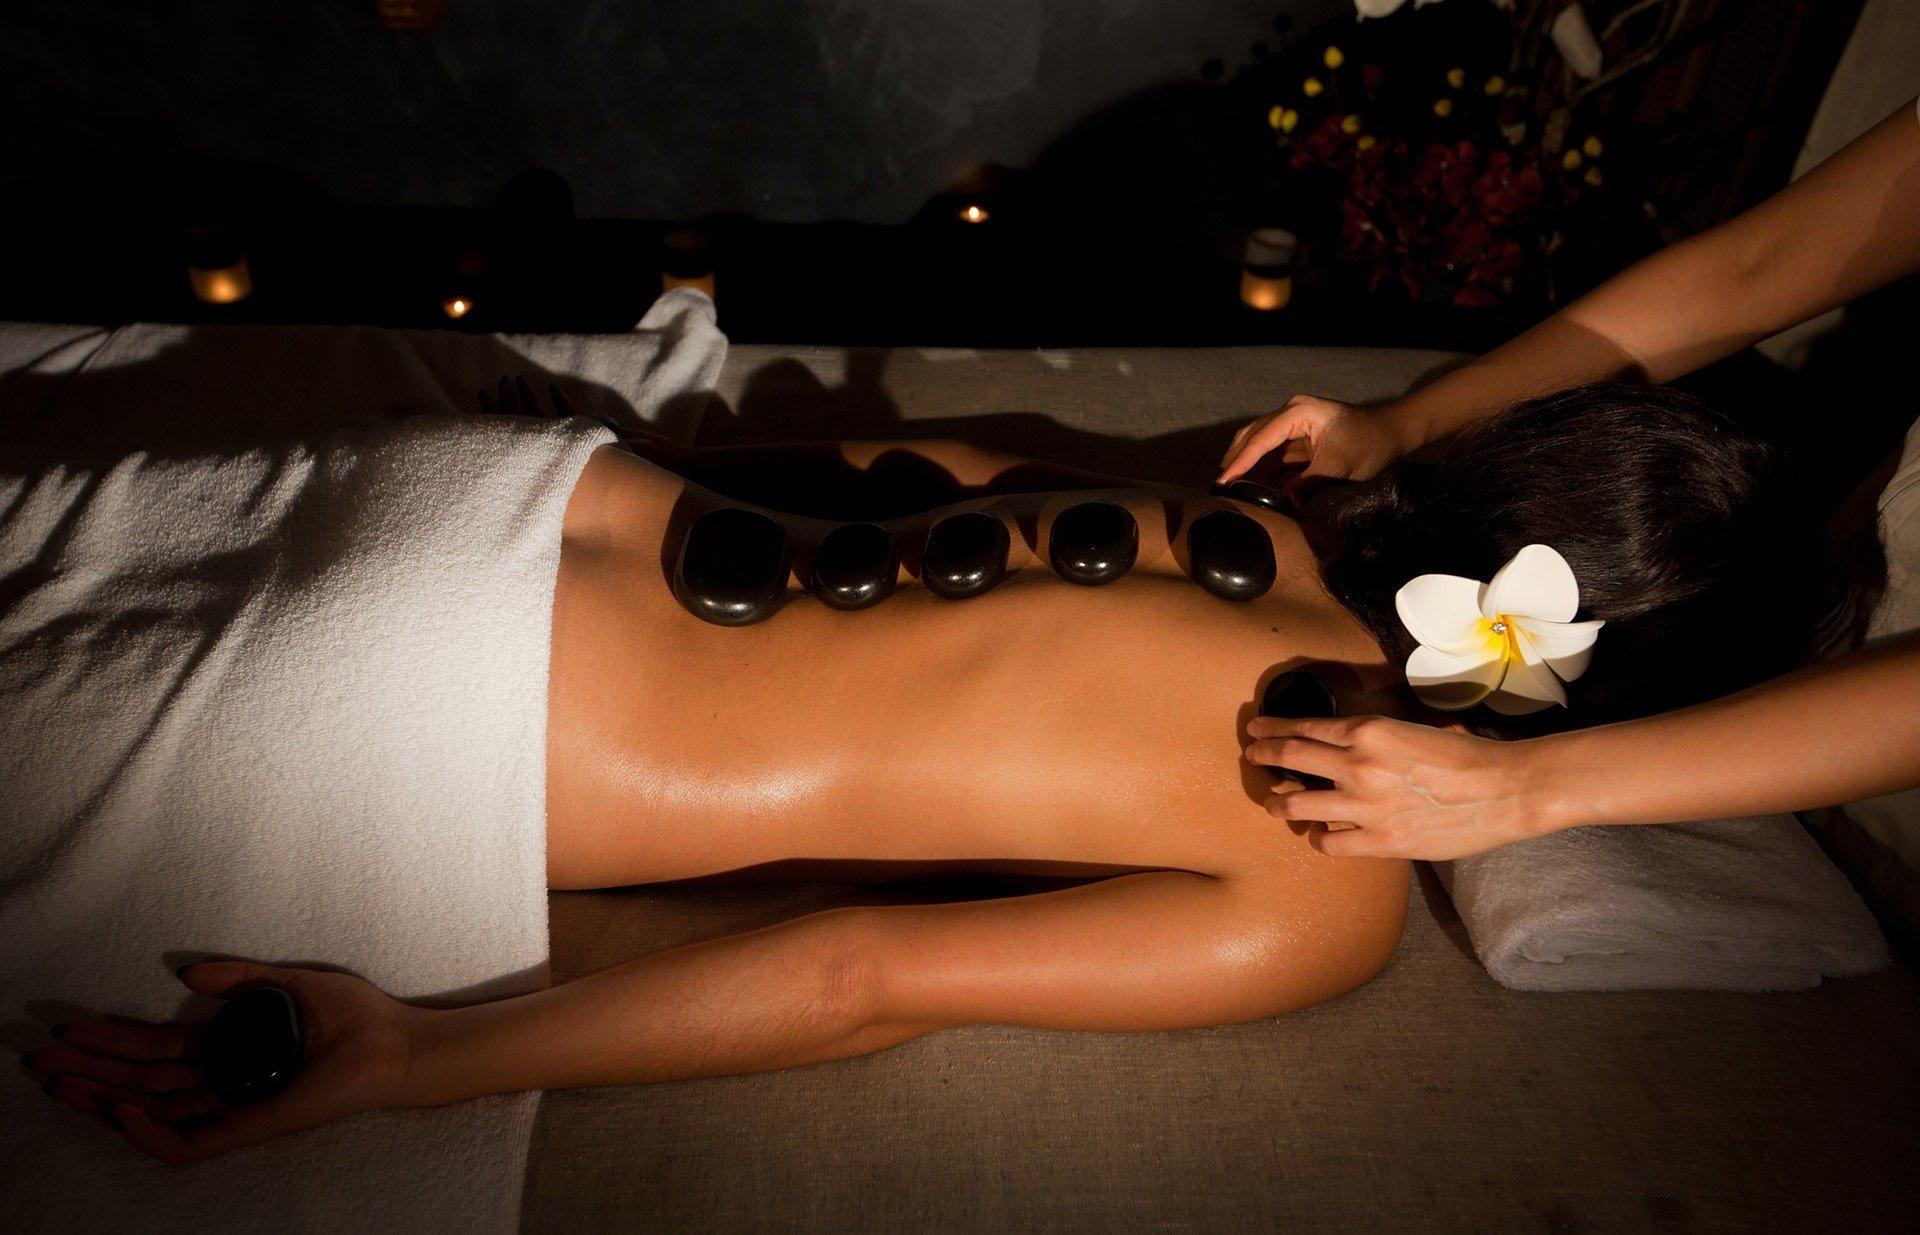 Vk com massage. Стоунтерапия СПБ. Стоунтерапия мужчина. Тайский массаж камнями. Стоунтерапия массаж.